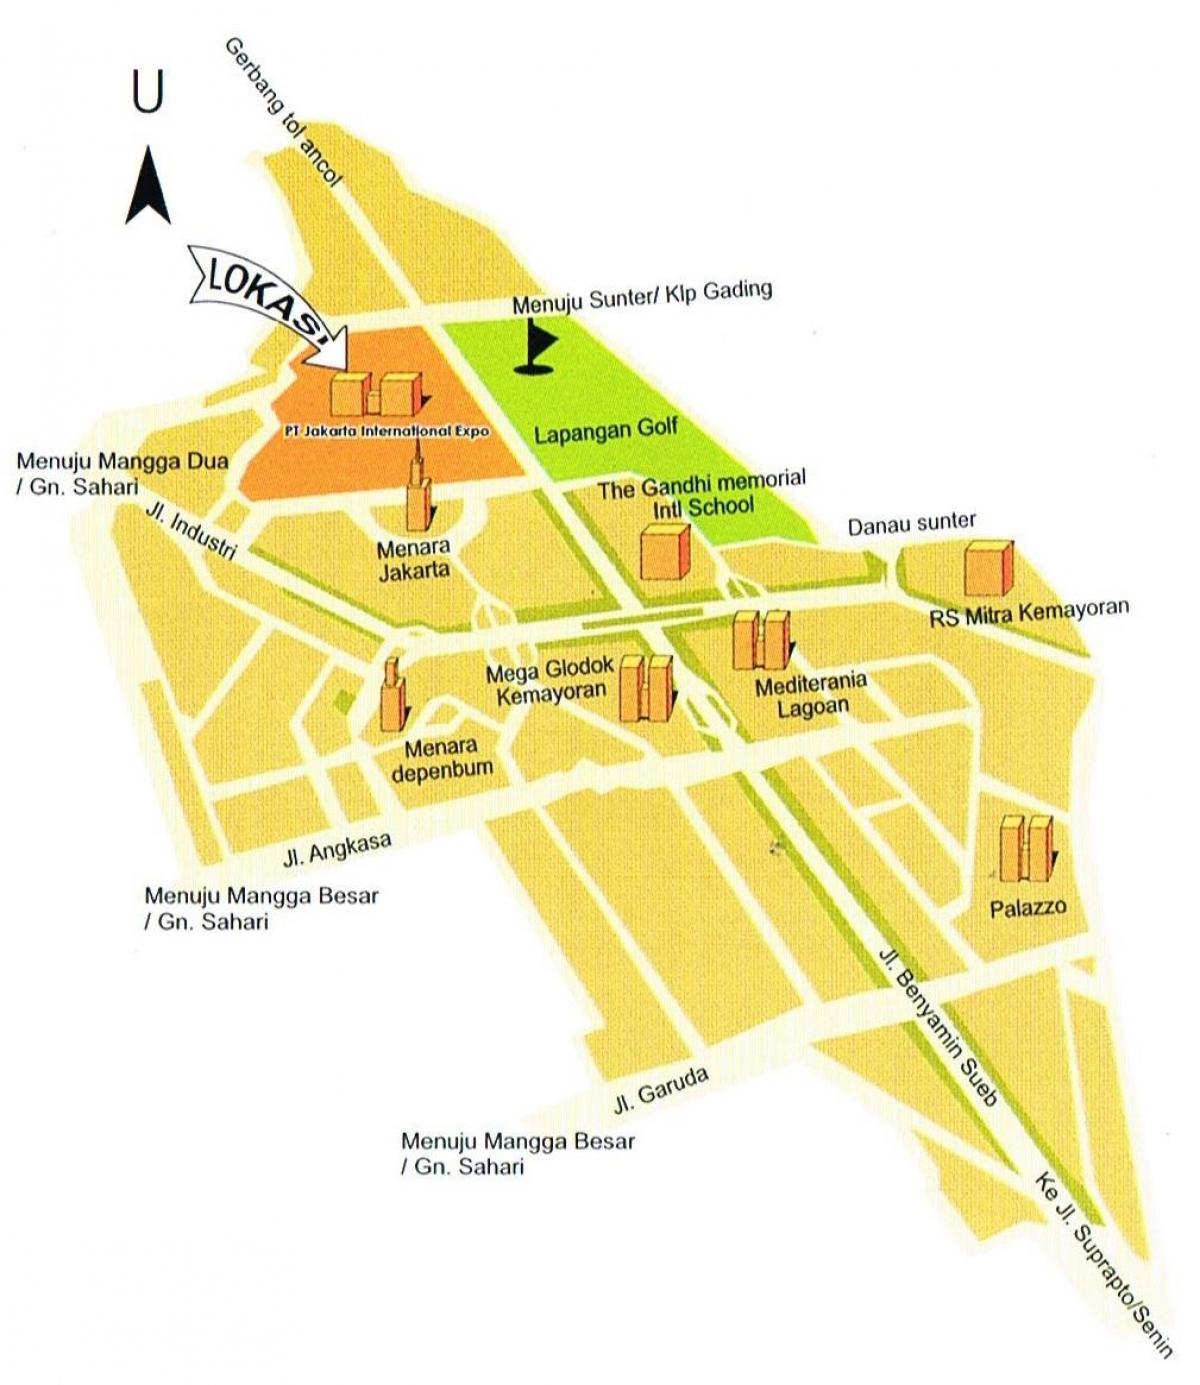 mapa do pt mapa jakar